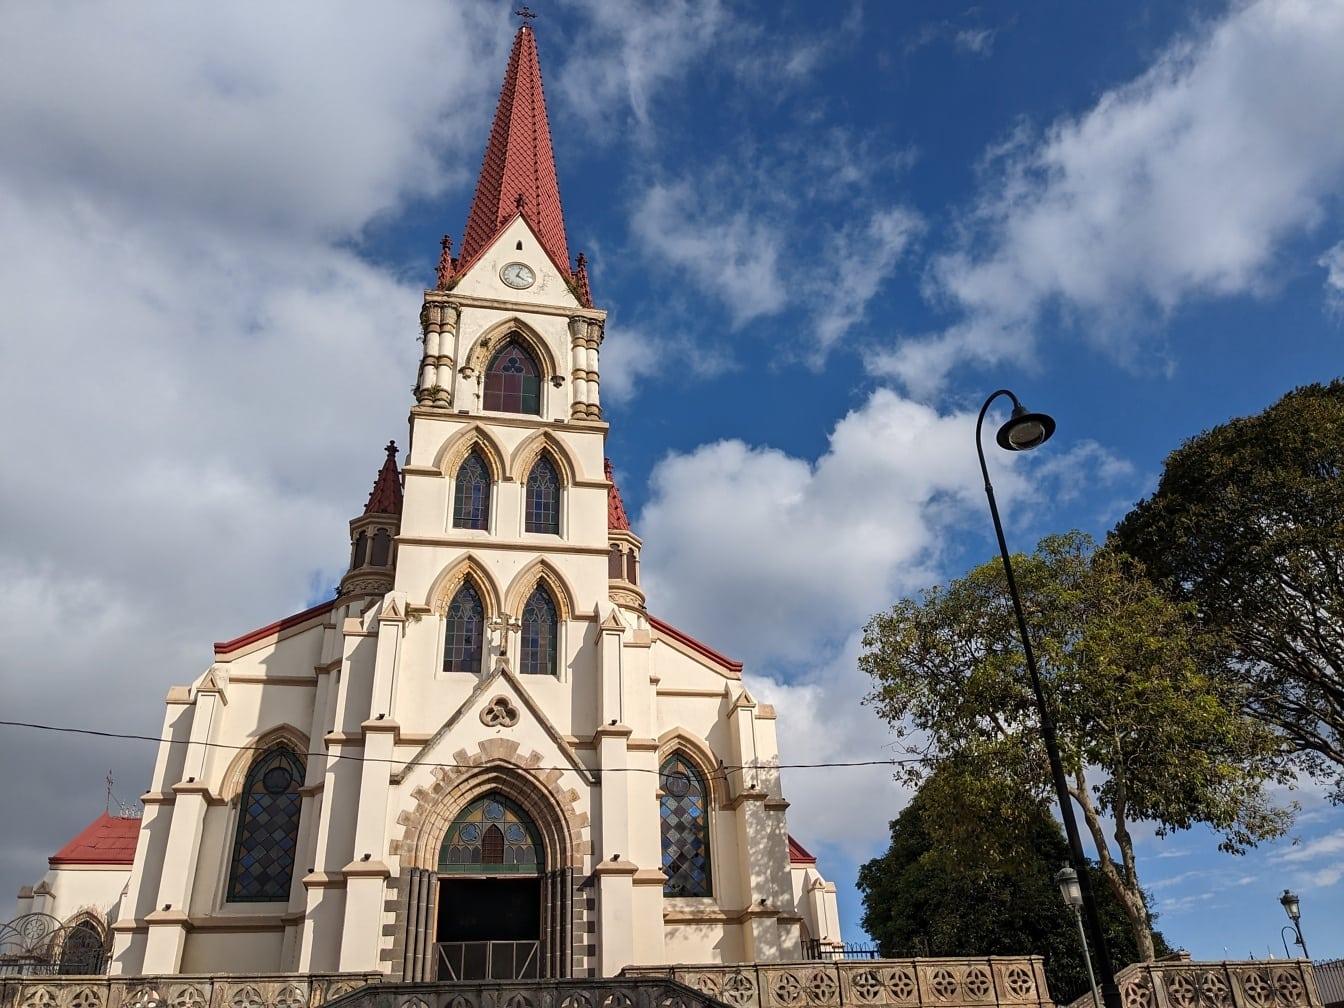 Церковь Богоматери Милосердия в колониальном архитектурном стиле с красной крышей